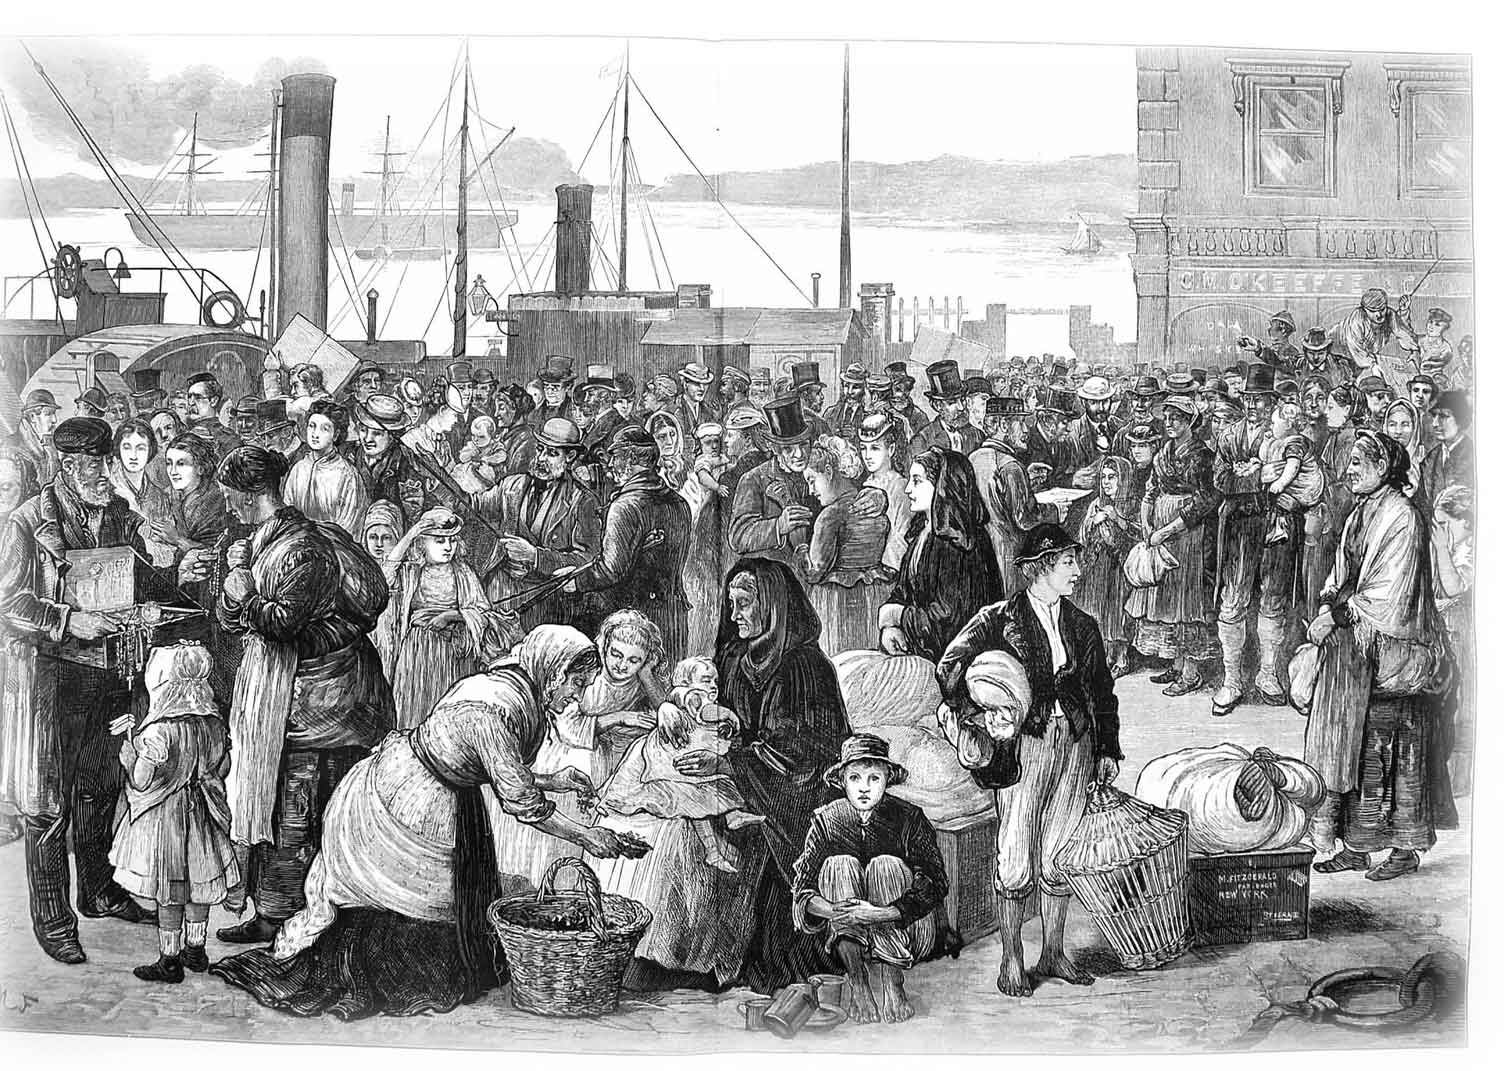  Emigrants in Queenstown 1874